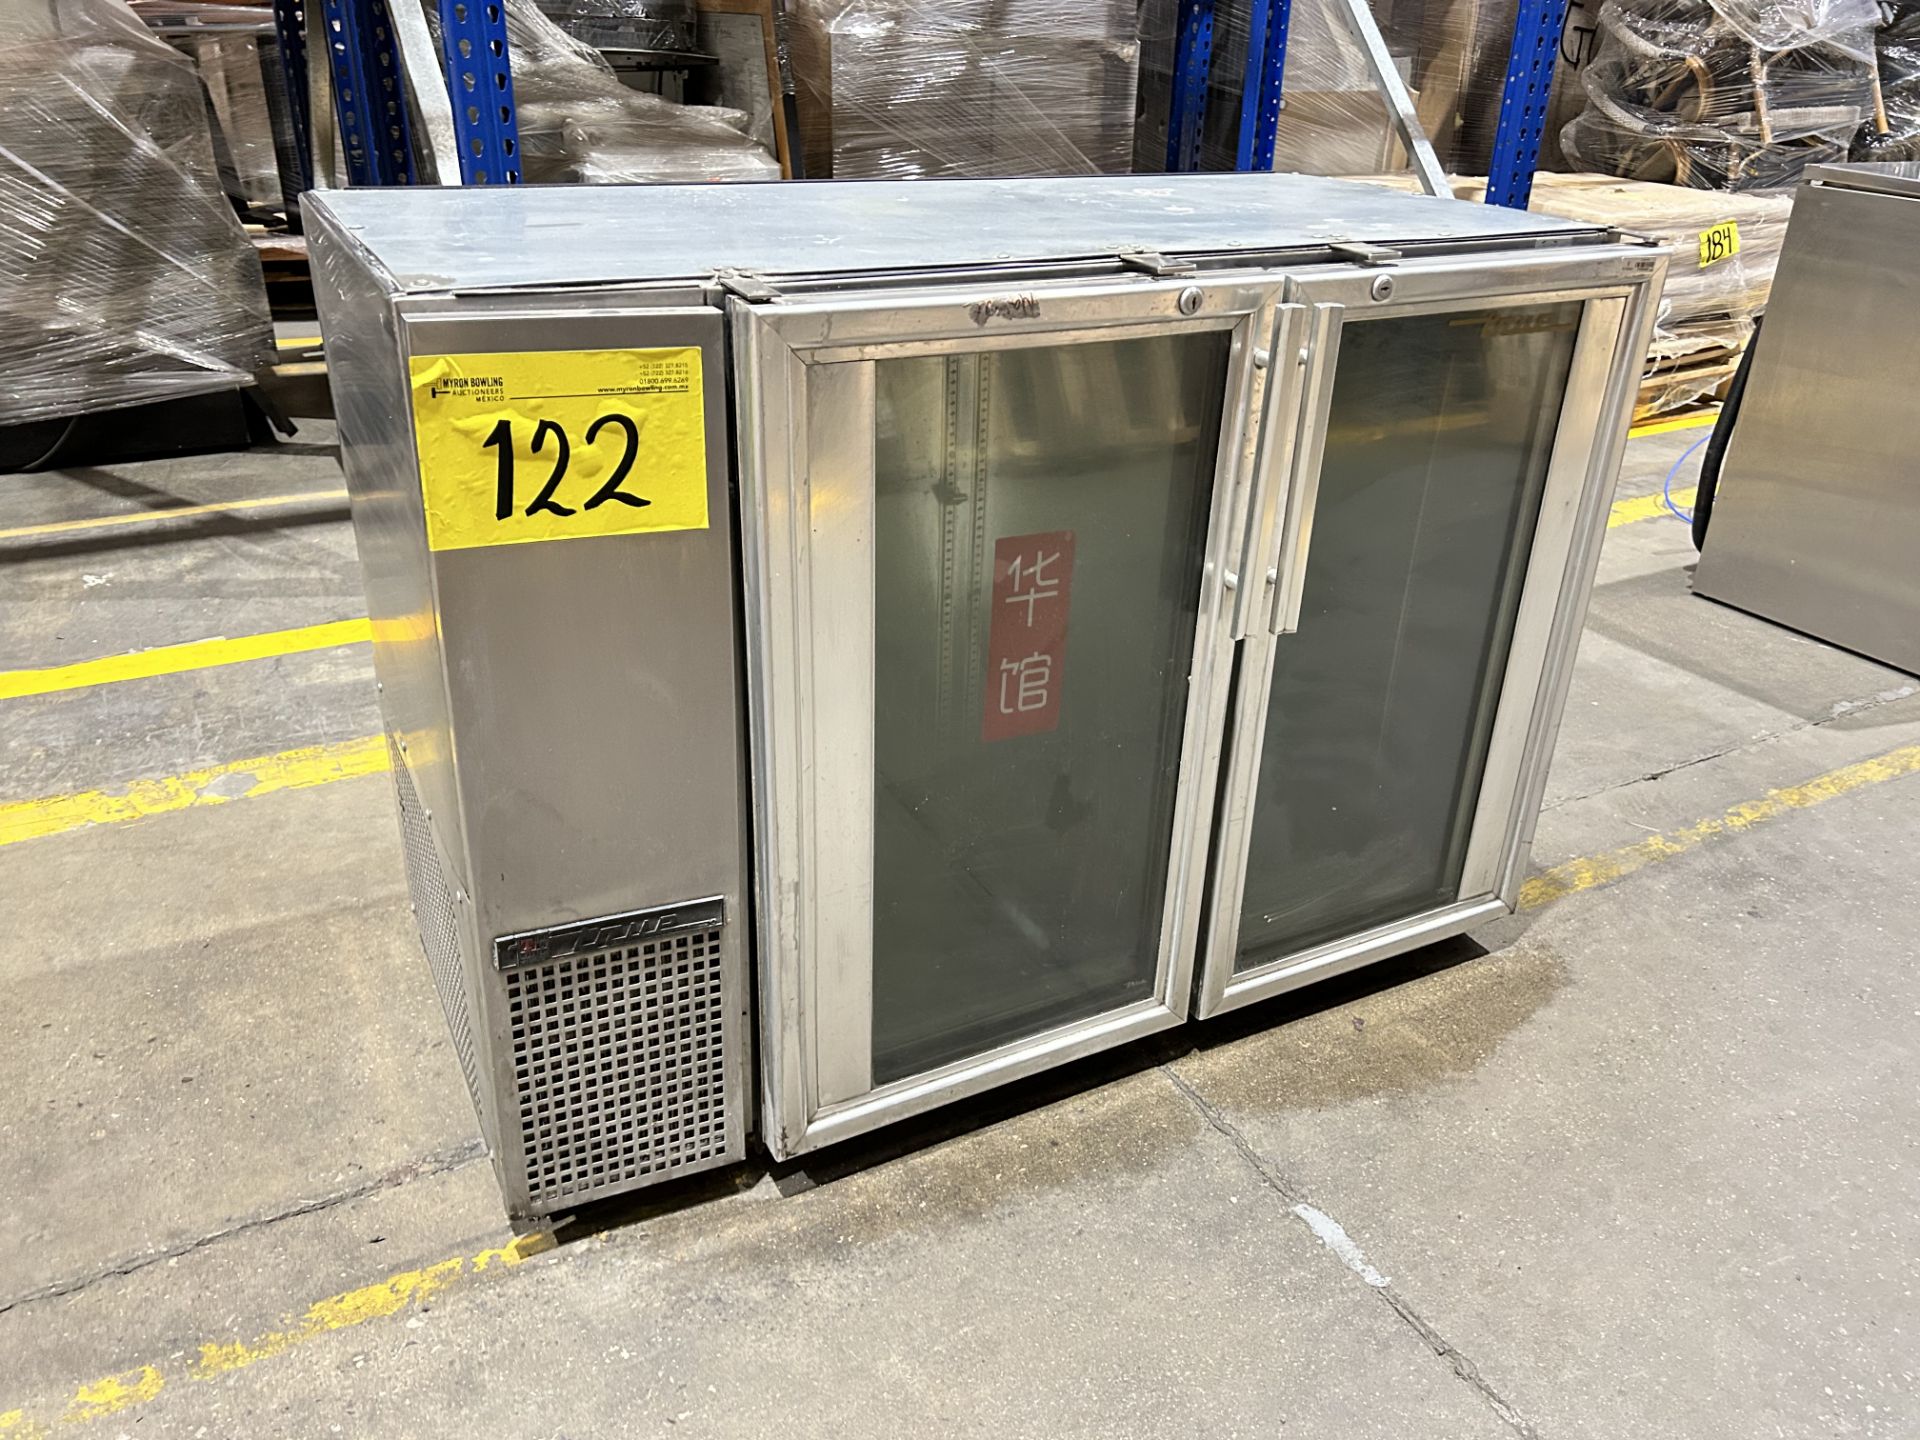 1 refrigerador Marca TRUE refrigerador, Modelo TBB24GAL48GS, Serie 6895955, Medidas 122 cm x 62.5 c - Image 3 of 6